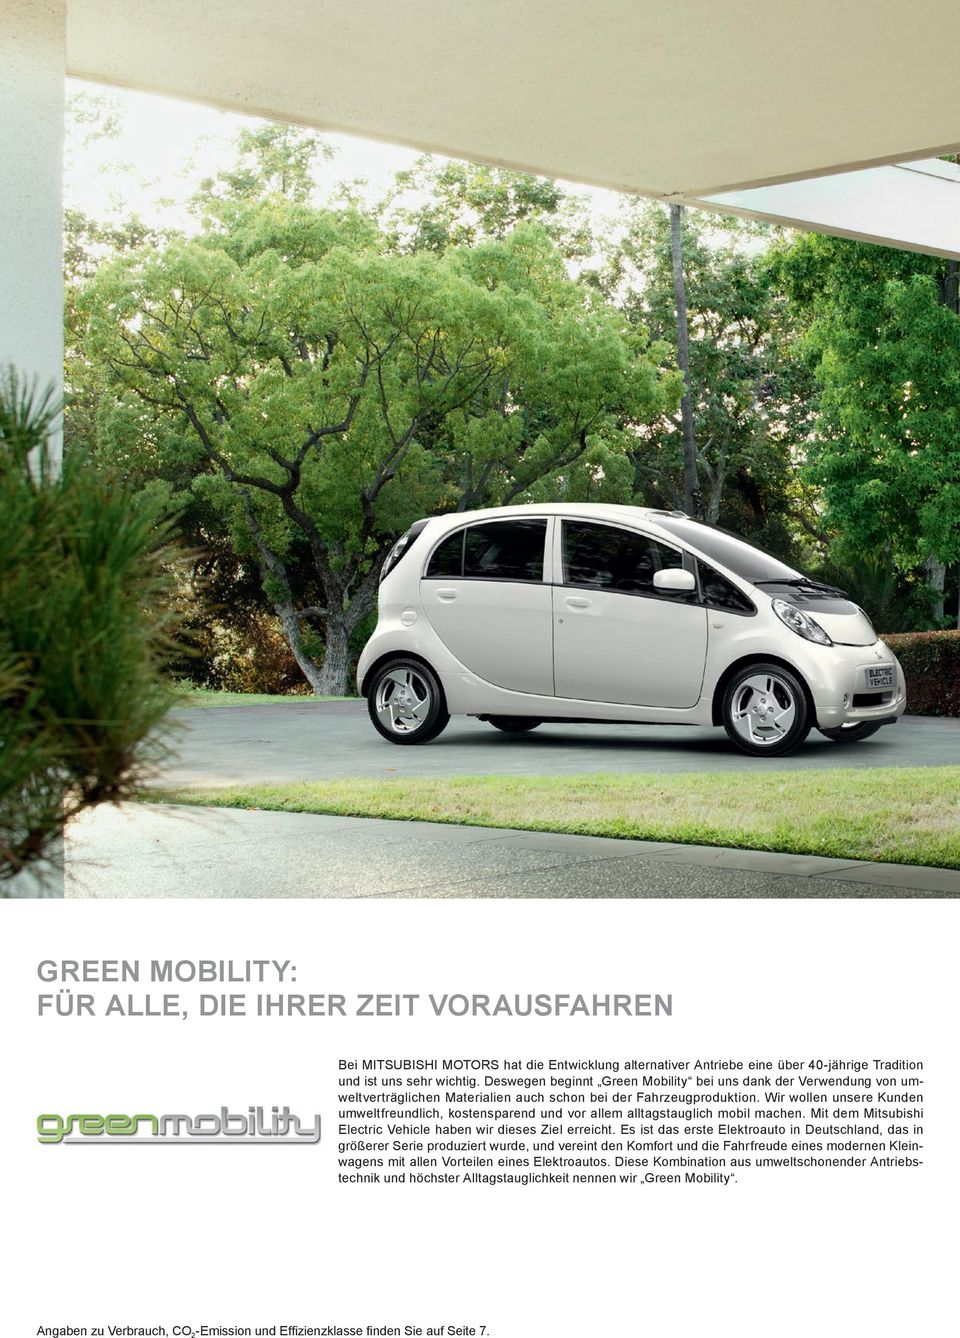 Wir wollen unsere Kunden umweltfreundlich, kostensparend und vor allem alltagstauglich mobil machen. Mit dem Mitsubishi Electric Vehicle haben wir dieses Ziel erreicht.